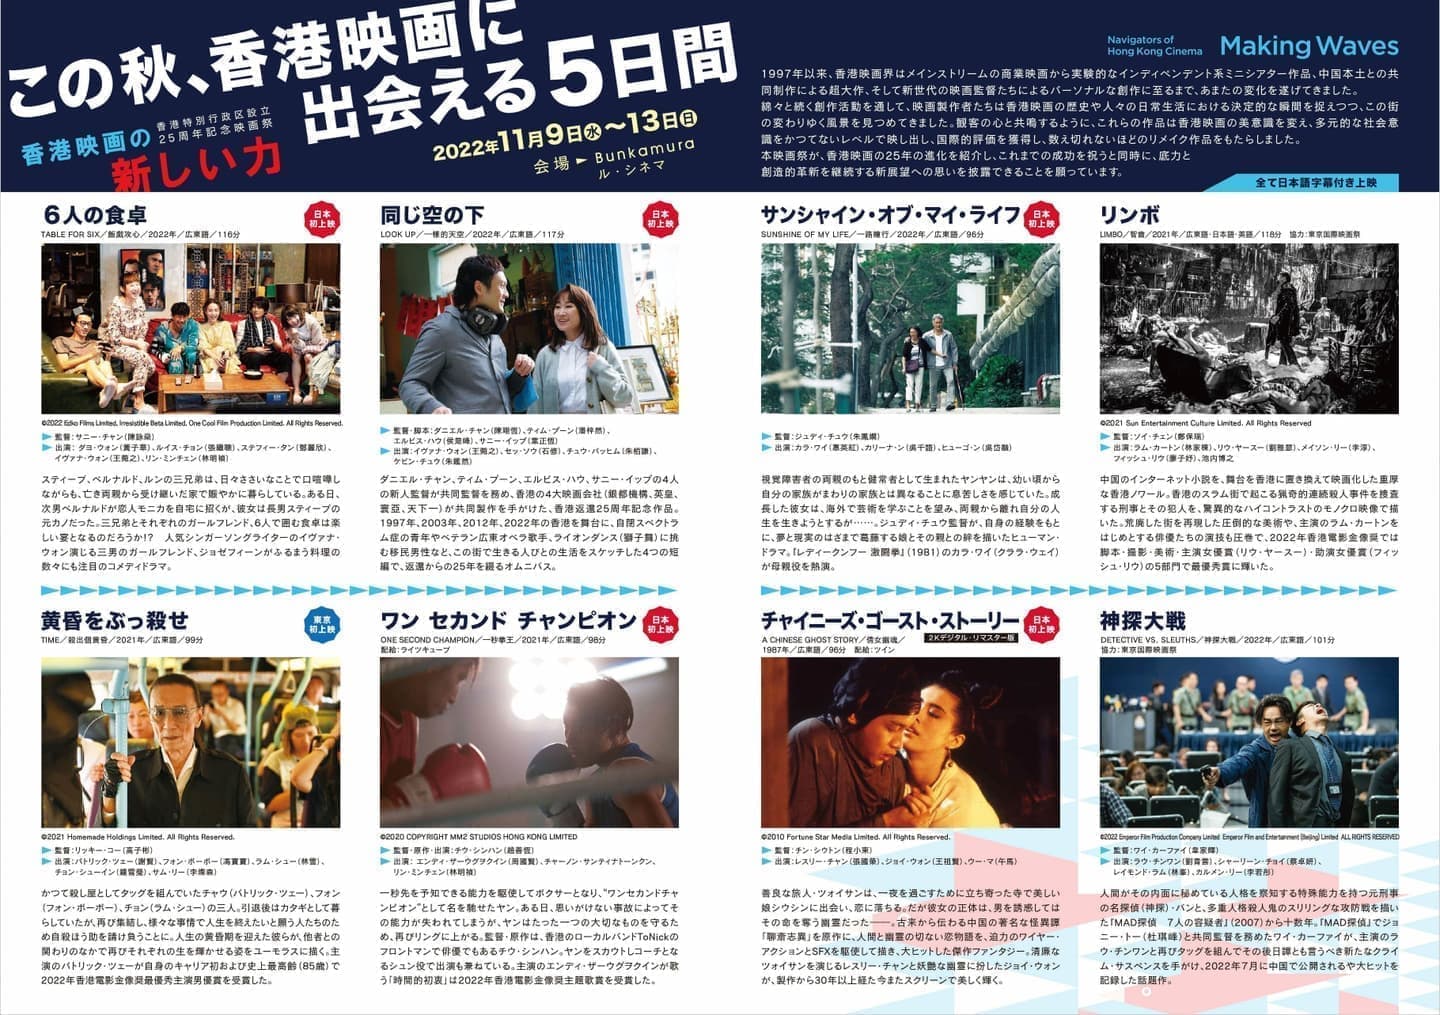 2022年｜香港特別行政区設立25周年記念映画祭 Making Waves - Navigators of Hong Kong Cinema 香港映画の新しい力（2022年11月9日～13日開催）